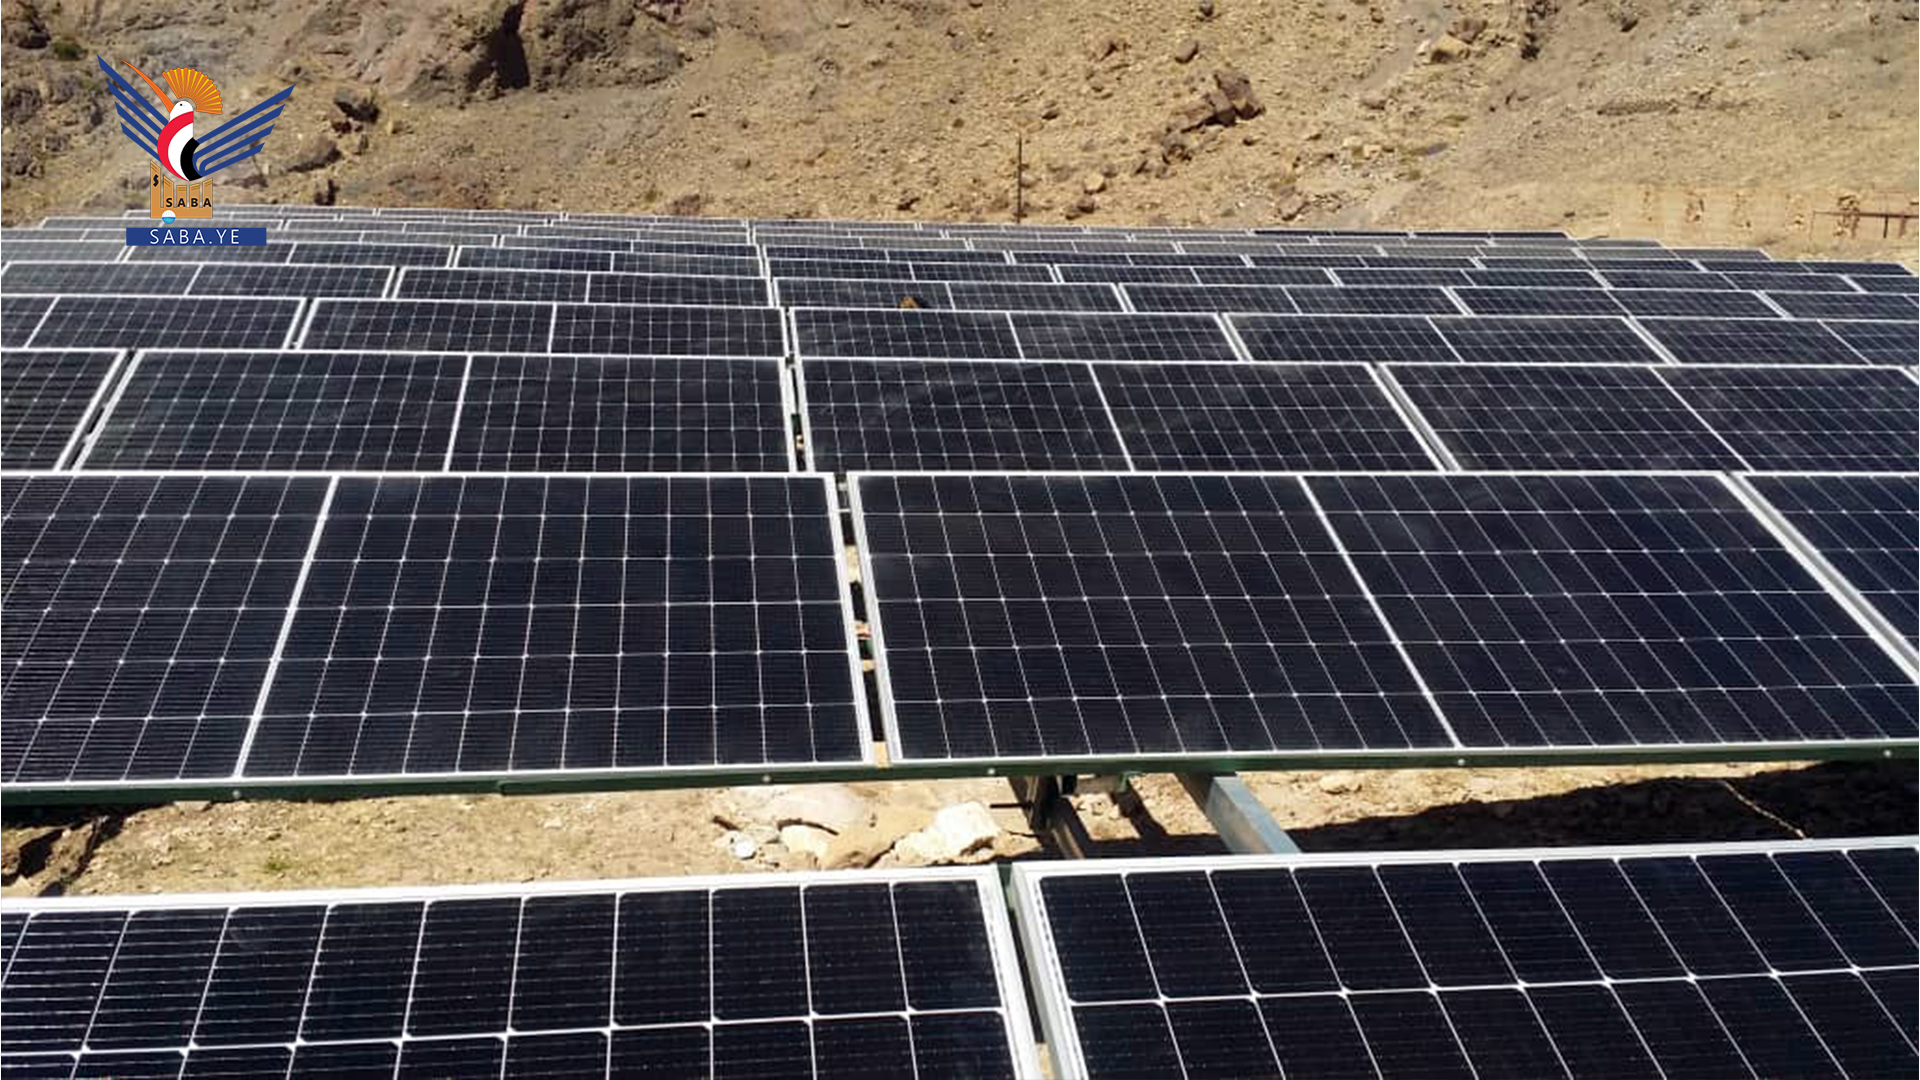 Landwirtschaftsminister weiht Solarenergieprojekt zur Bewässerung von Kaffee im Distrikt Bani Matar in Sana'a